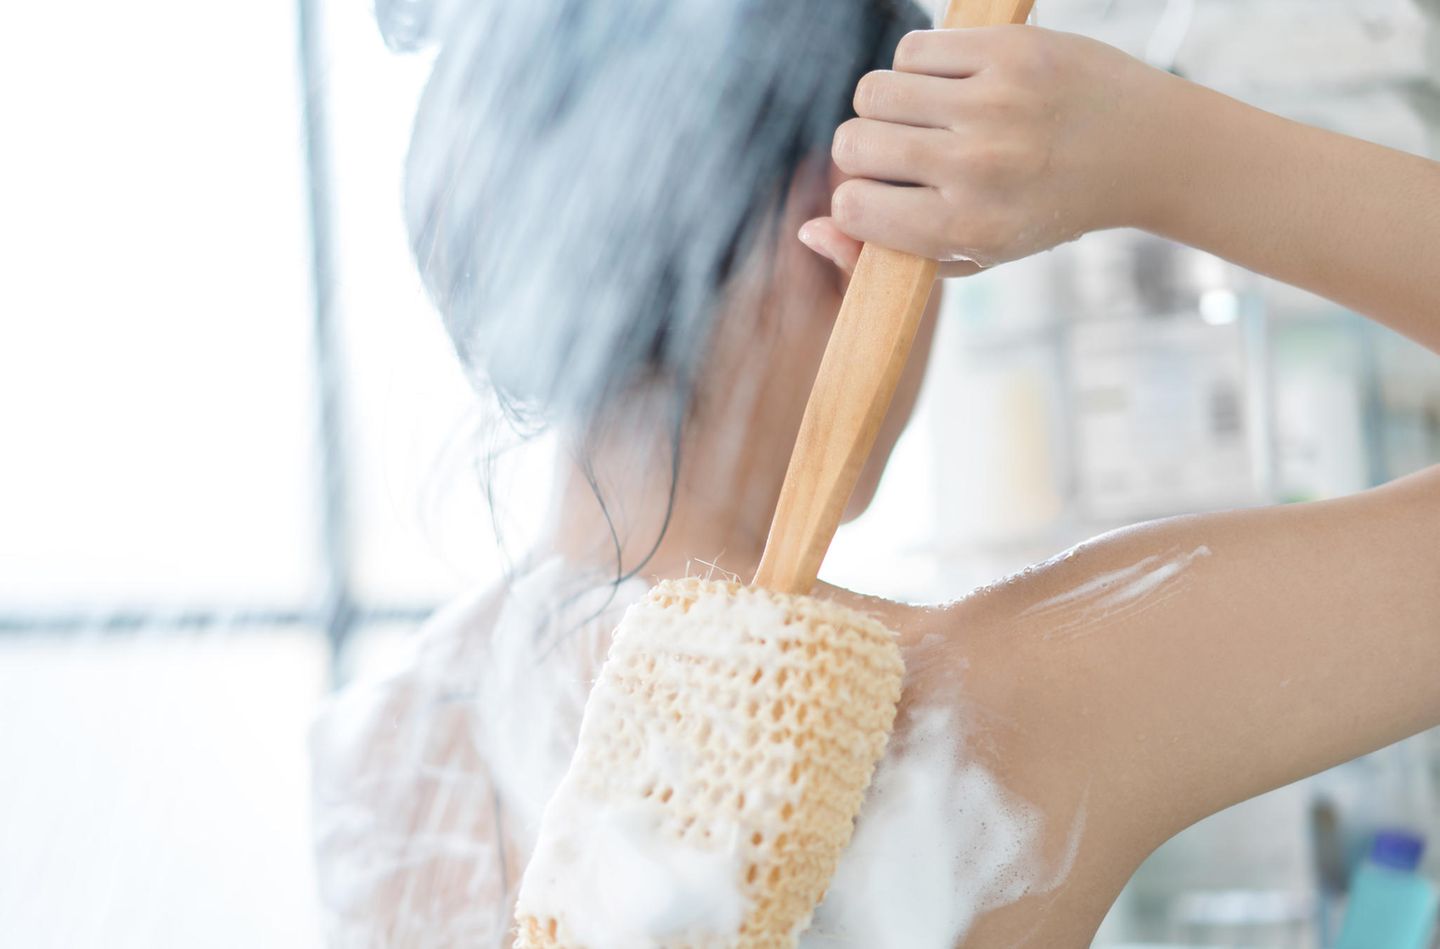 Tipps bei Kälte: Eine Frau unter der heißen Dusche